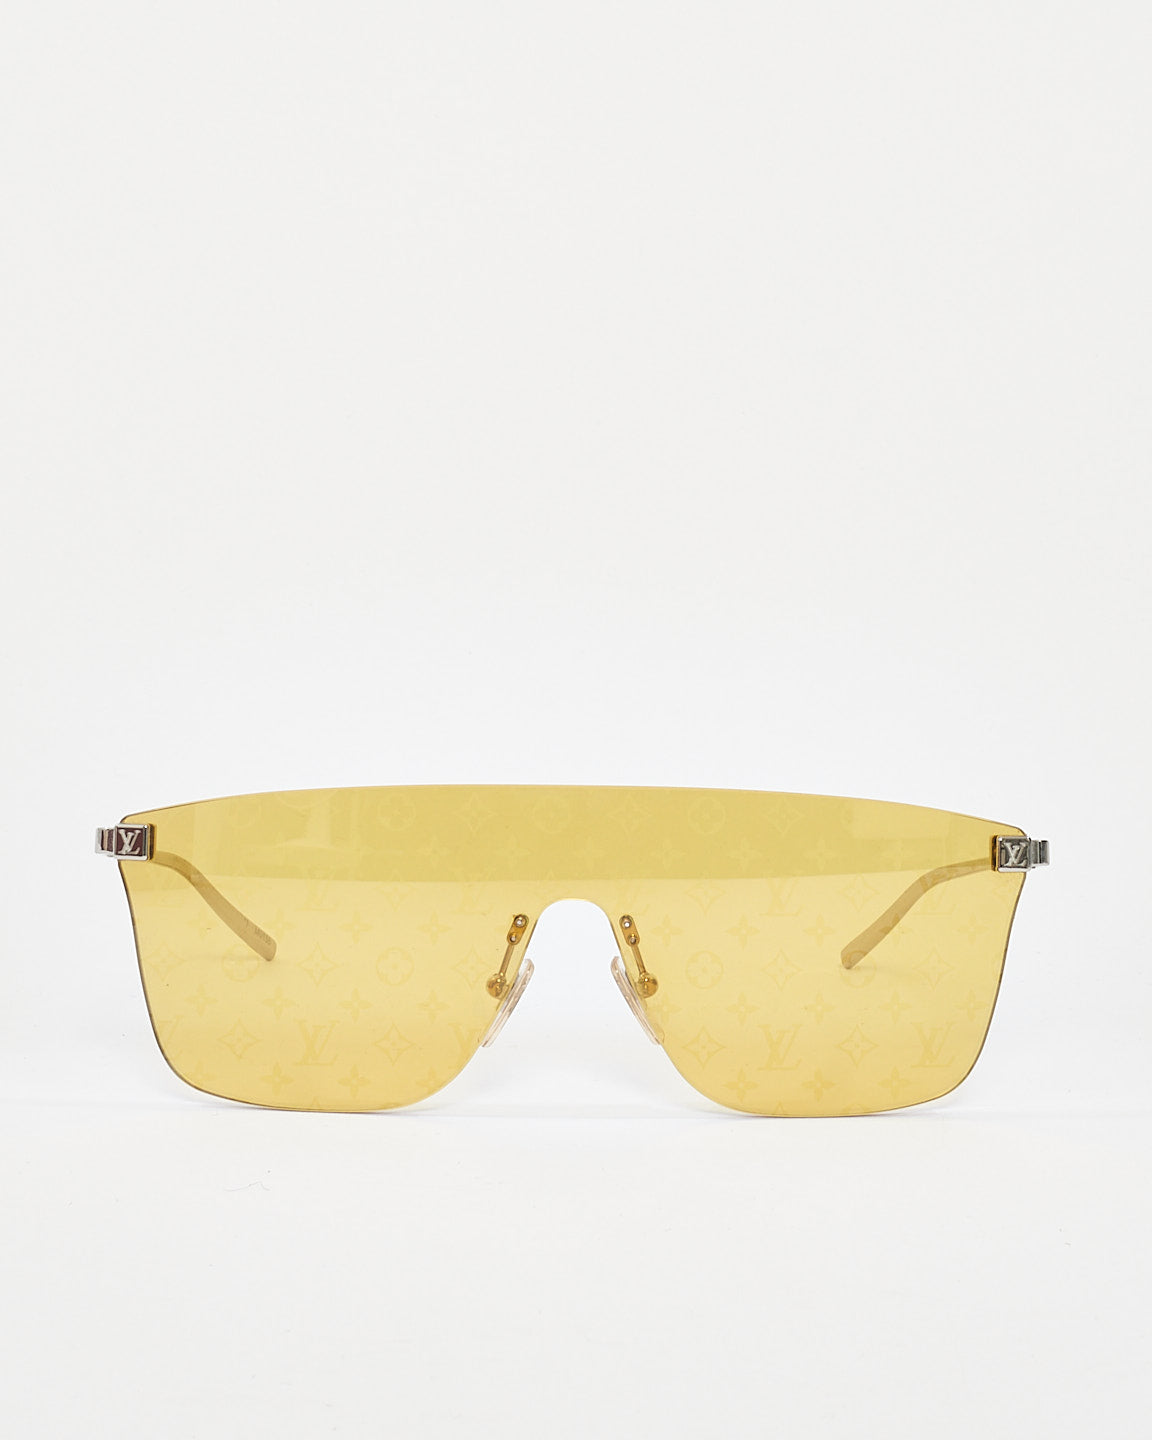 Lunettes de soleil Louis Vuitton Monogram Showdown Shield jaunes